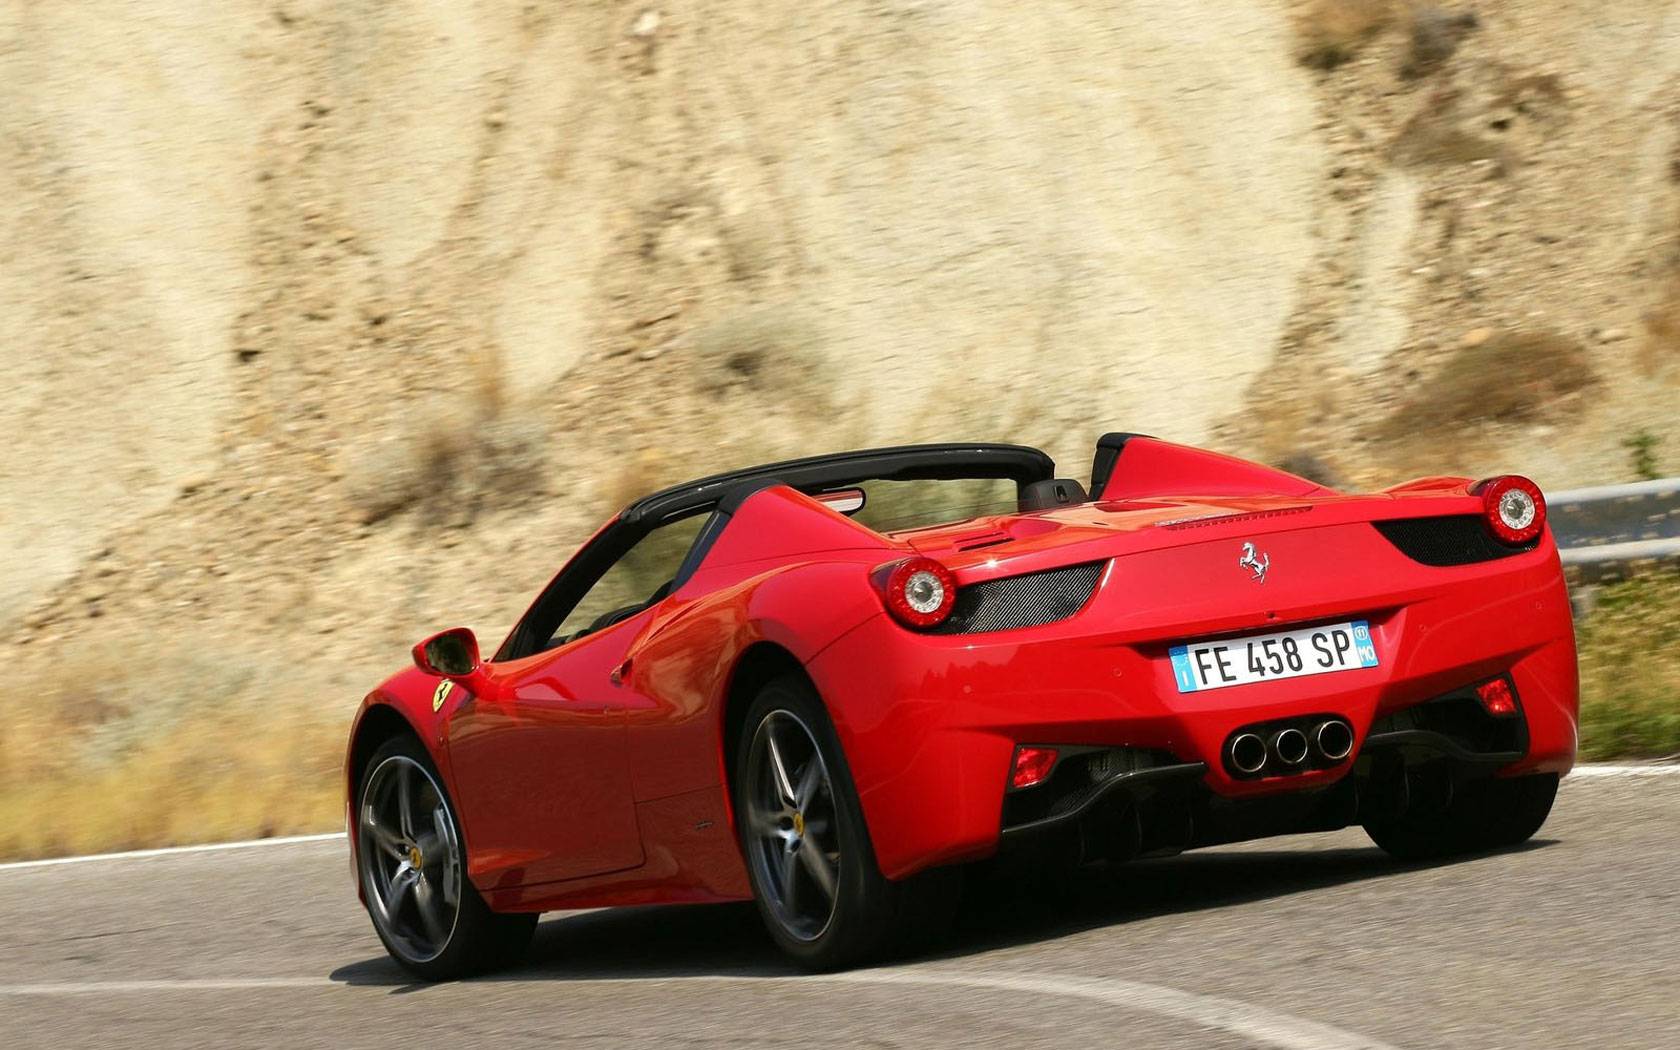 Ferrari 458 italia, тест драйв, технические характеристики, цены, фото, видео